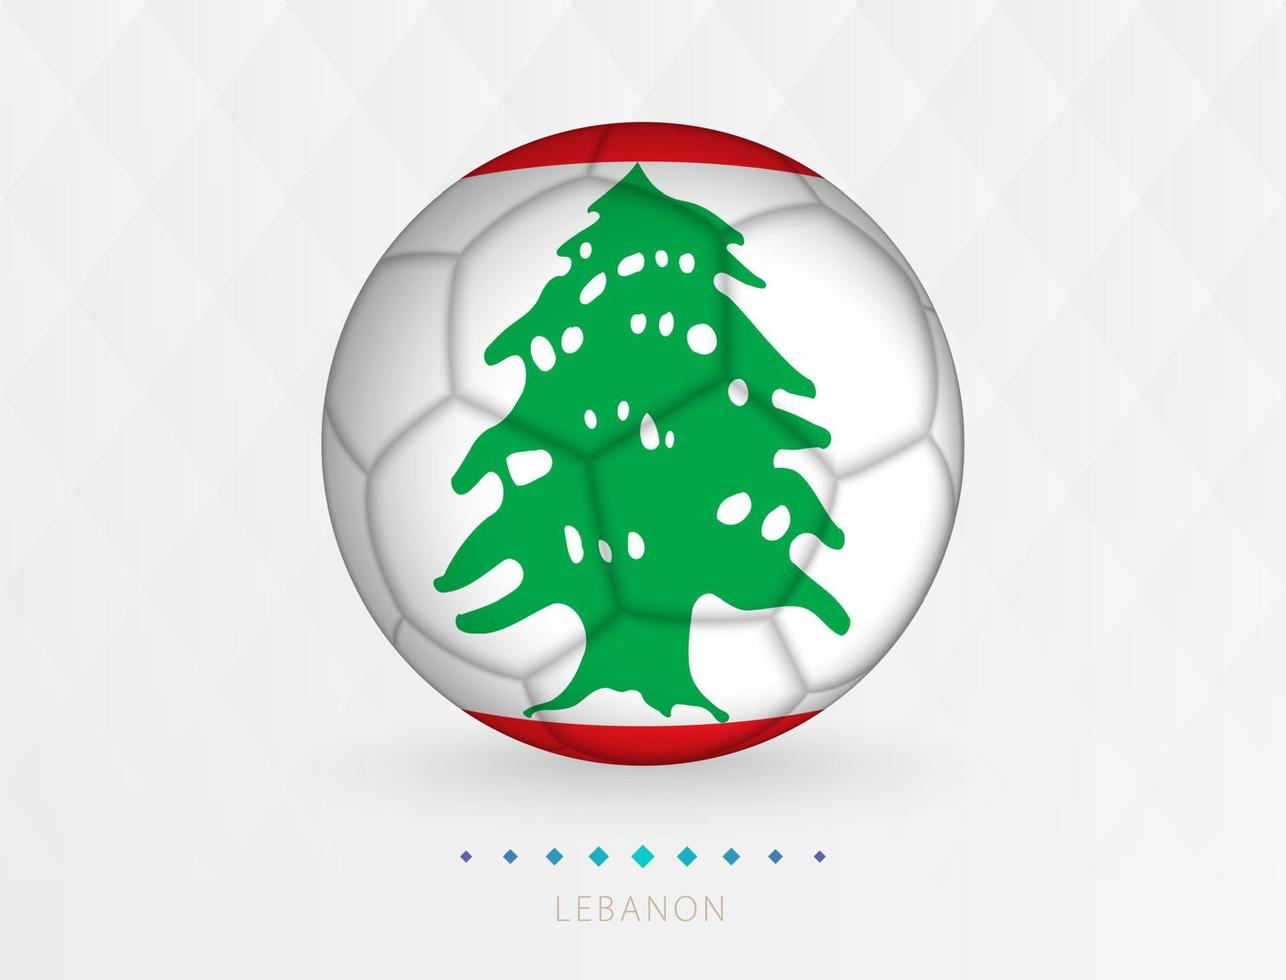 Football Balle avec Liban drapeau modèle, football Balle avec drapeau de Liban nationale équipe. vecteur